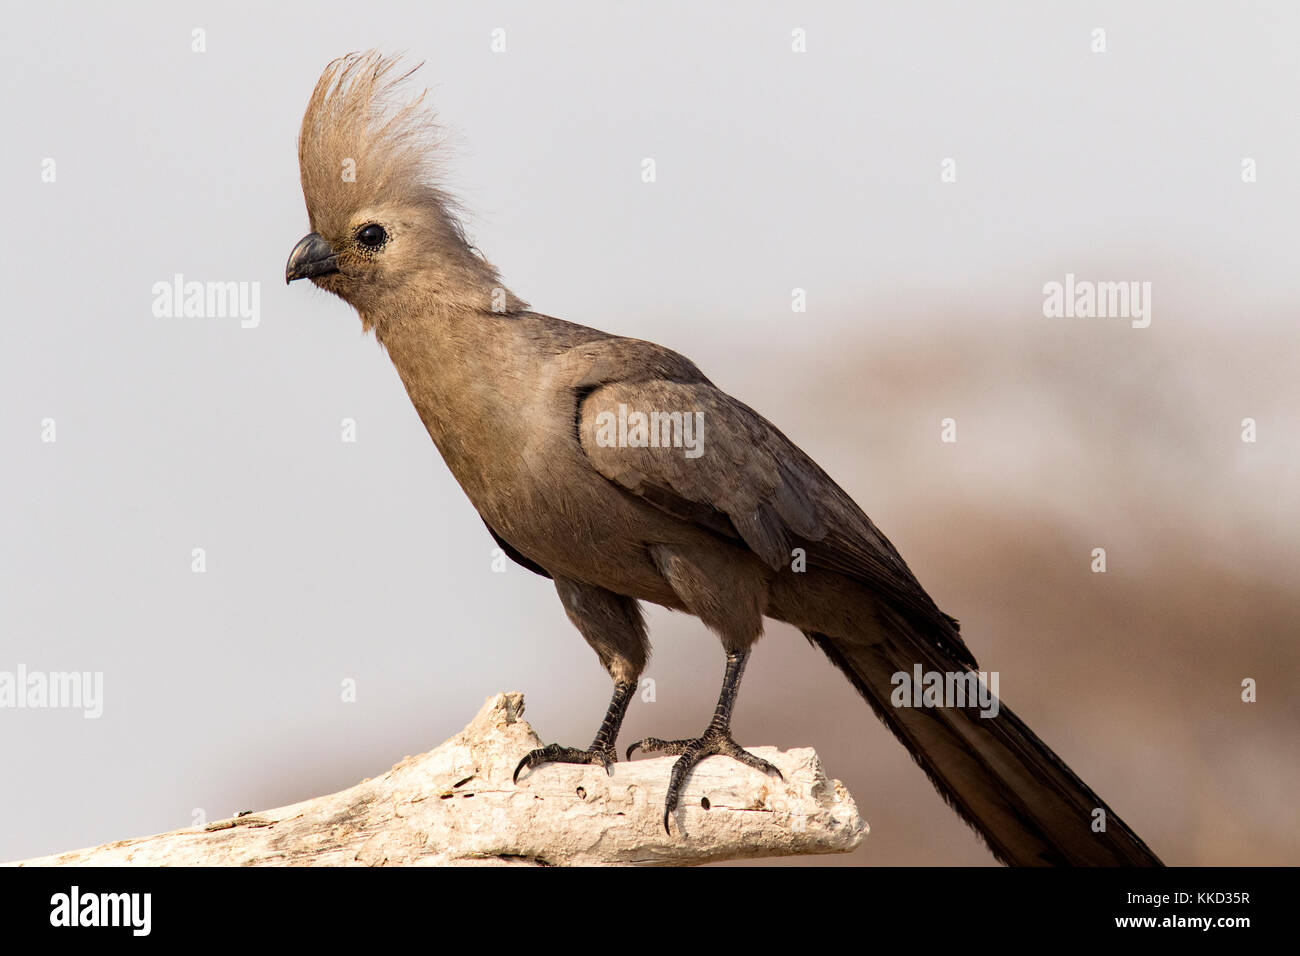 Grau-weg-bird (corythaixoides concolor) onkolo verbergen, onguma Game Reserve, Namibia, Afrika Stockfoto